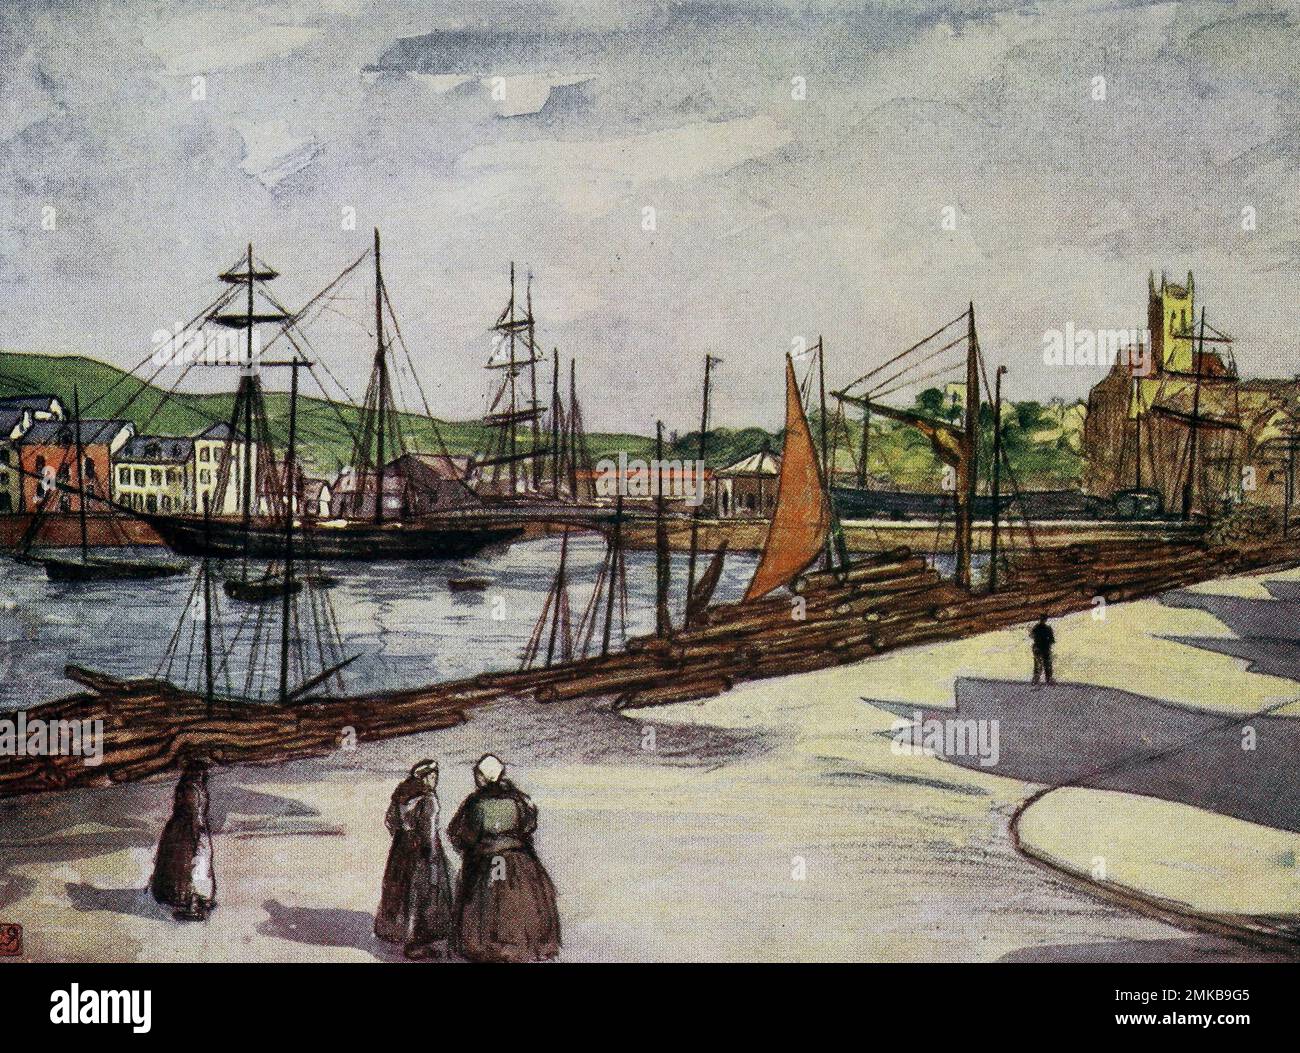 Port de Fecamp, Normandie, France, vers 1900 Banque D'Images